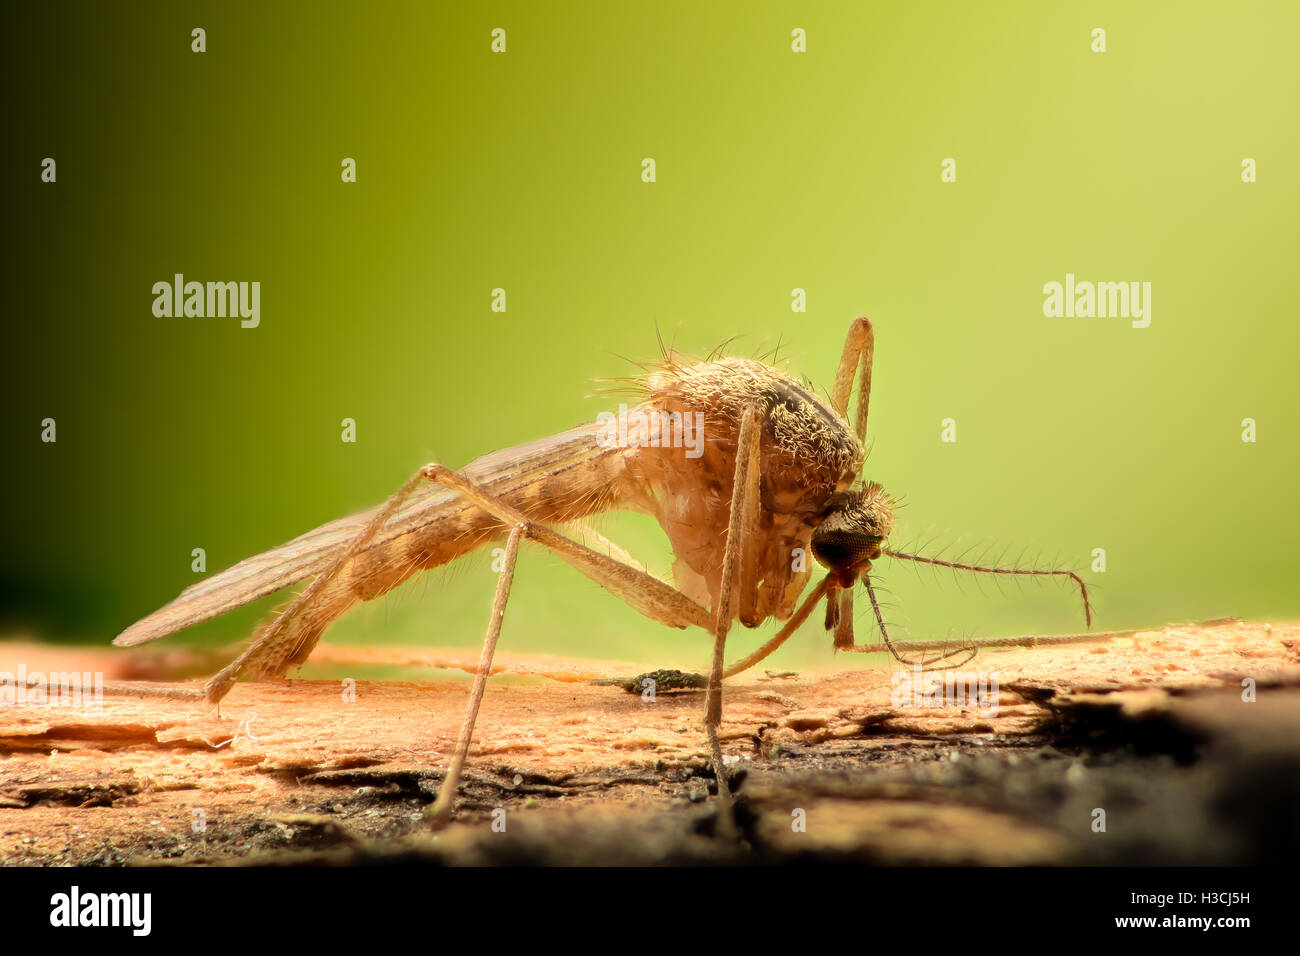 Ampliación extrema - Mosquito en una sucursal Foto de stock